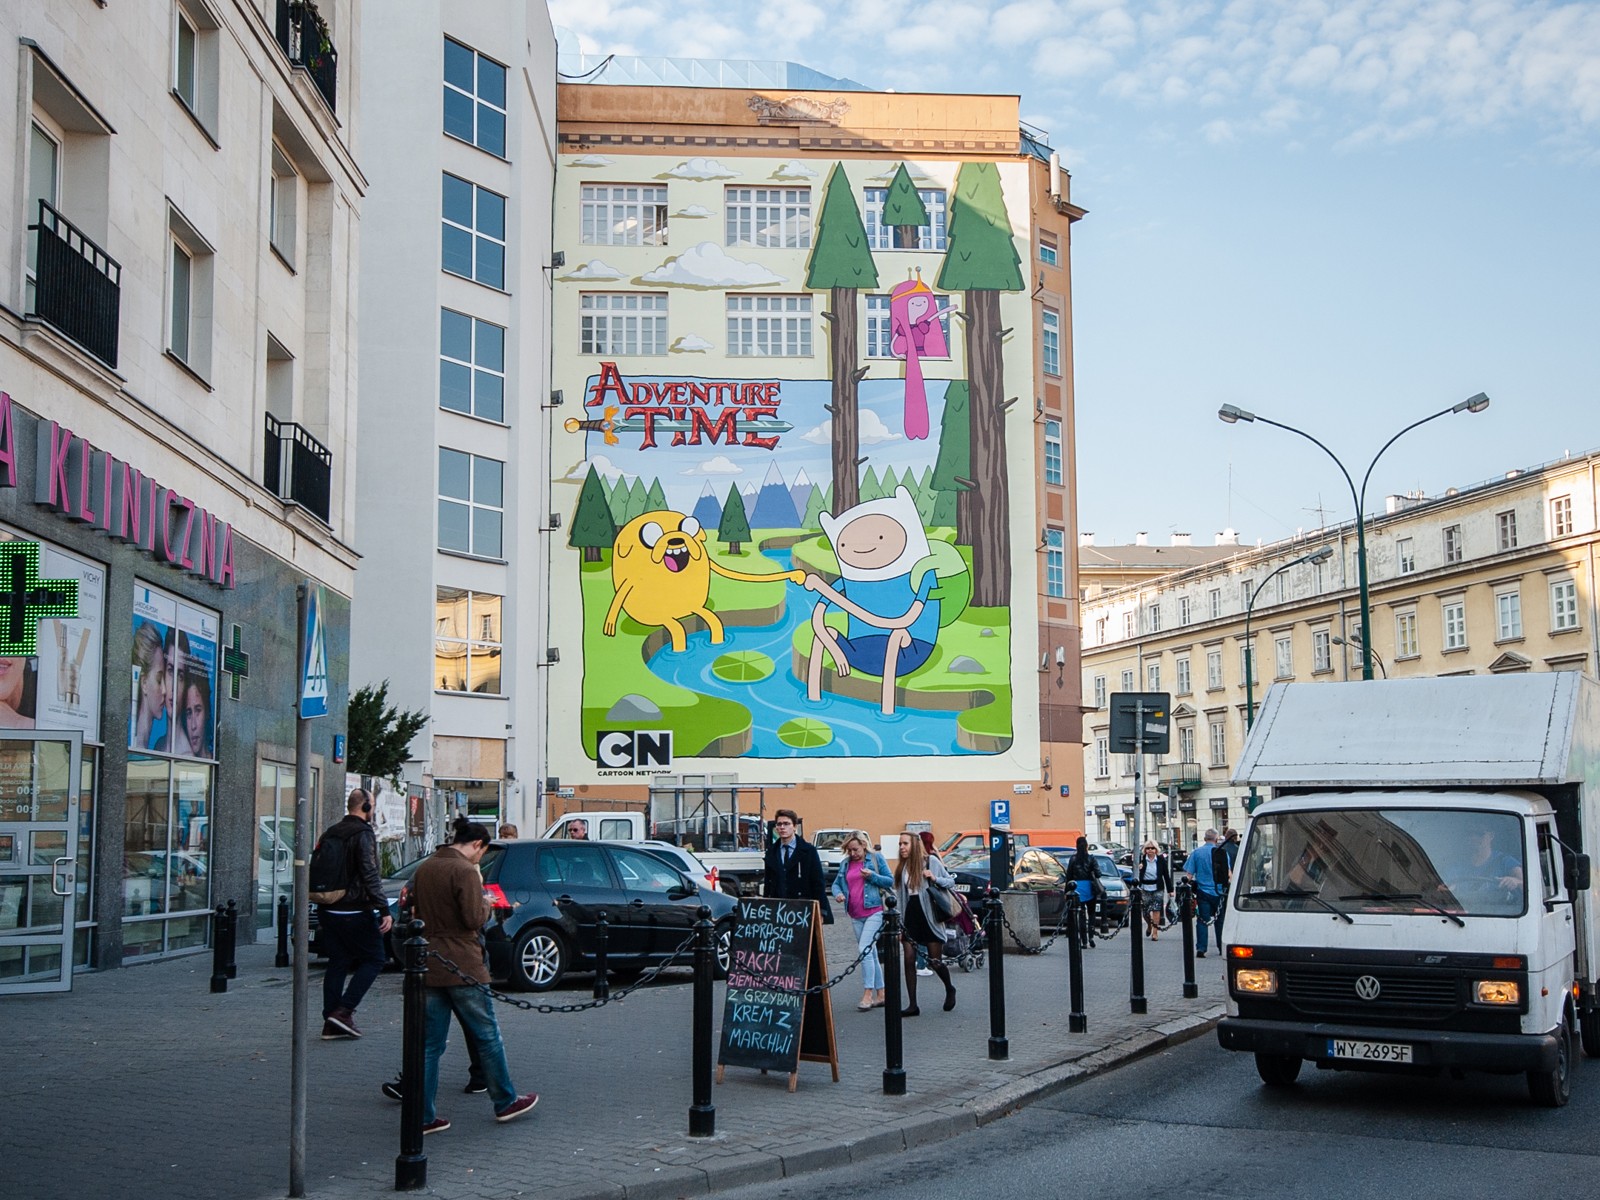 Warenhaus Dom Towarowy Bracia Jablkowscy Mural Großflächiges Kunstwerk Cartoon Network Adventure Time in Warschau | Adventure Time | Portfolio